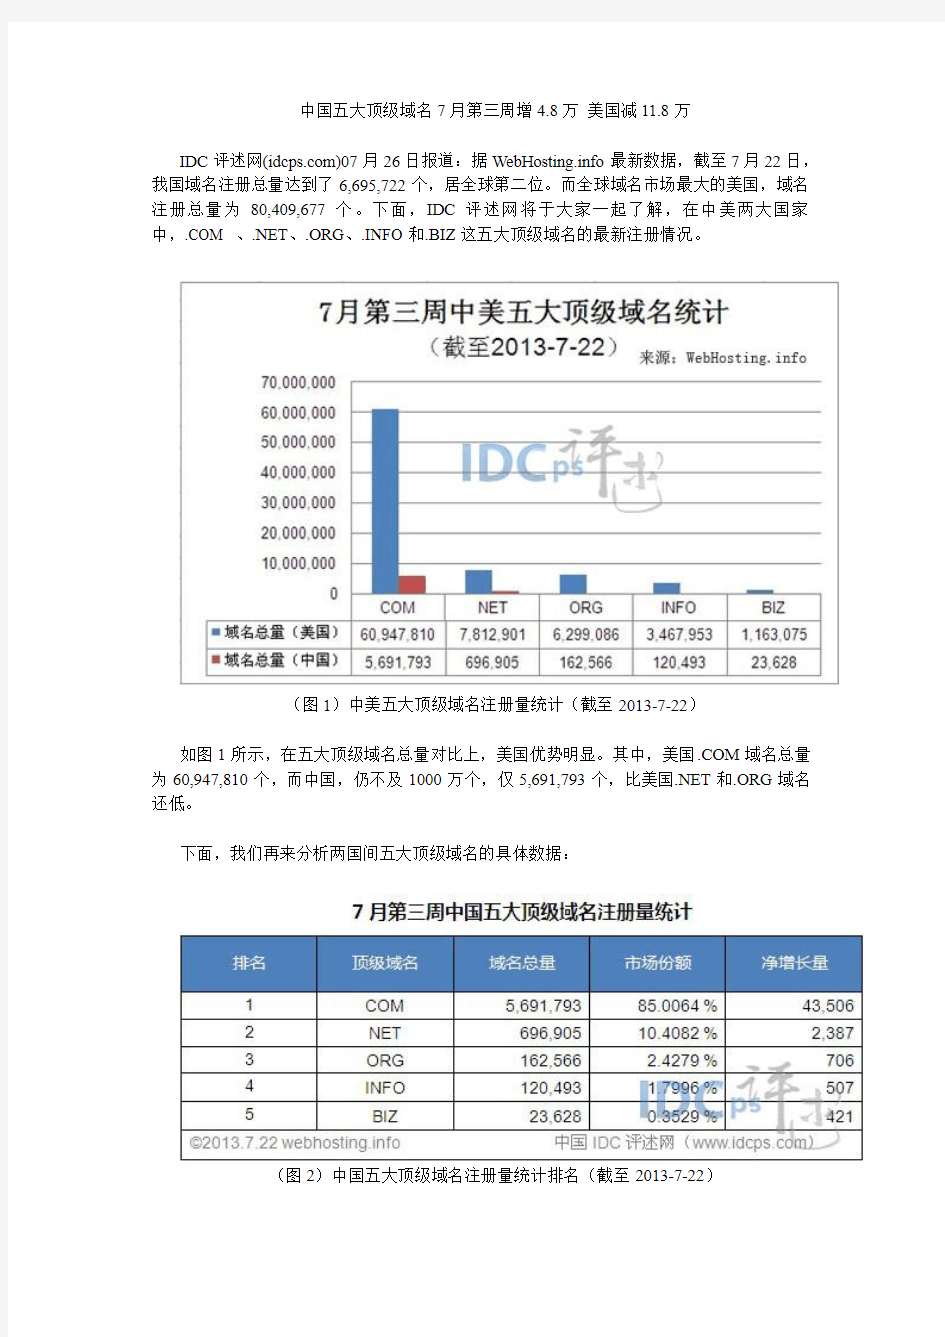 中国五大顶级域名7月第三周增4.8万 美国减11.8万